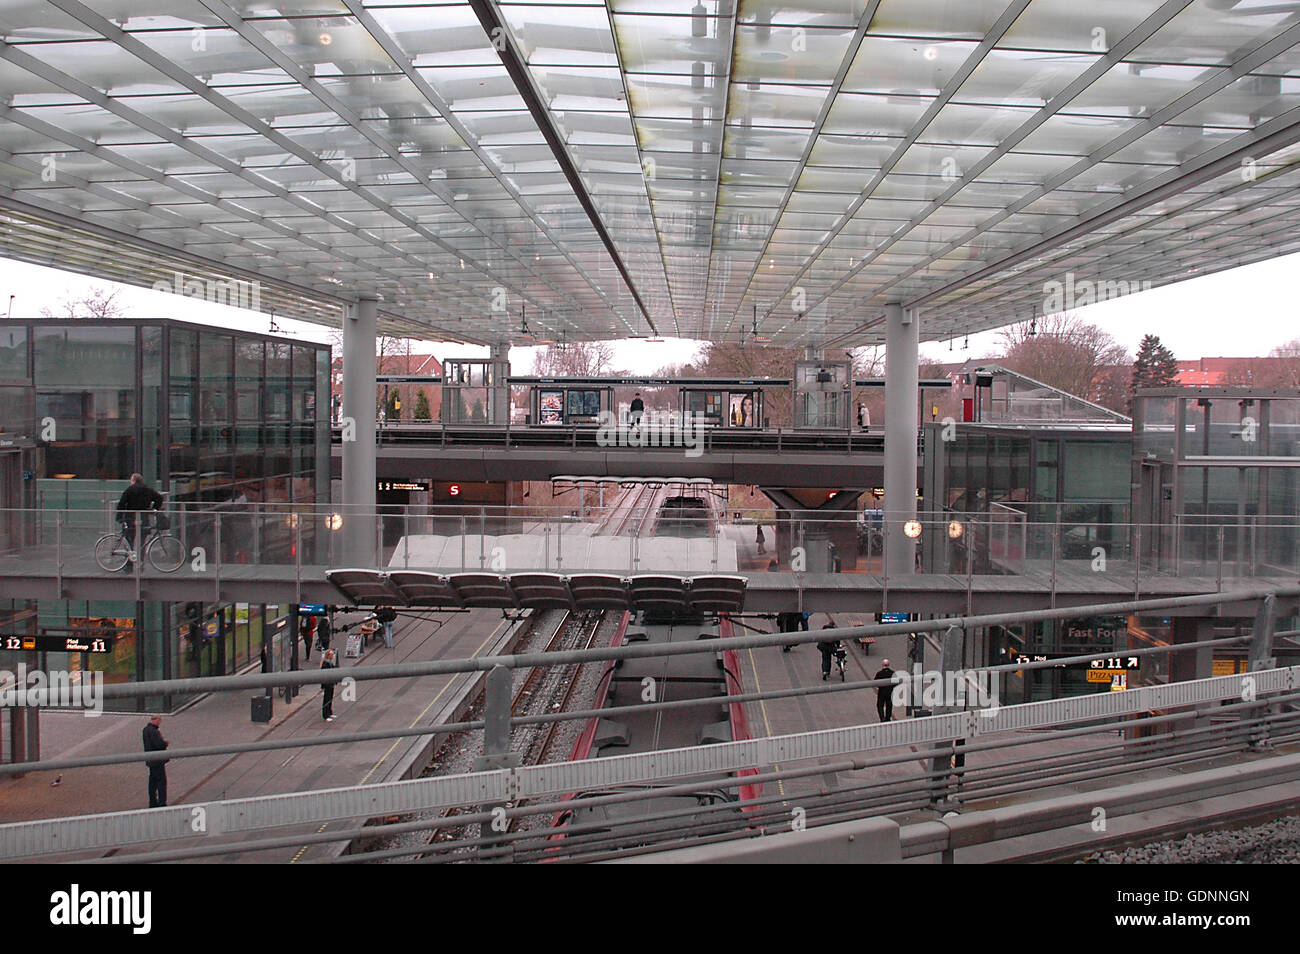 Flintholm Stazione Ferroviaria di Copenhagen, dove 2 S linee ferroviarie e della metropolitana incontra. Foto Stock